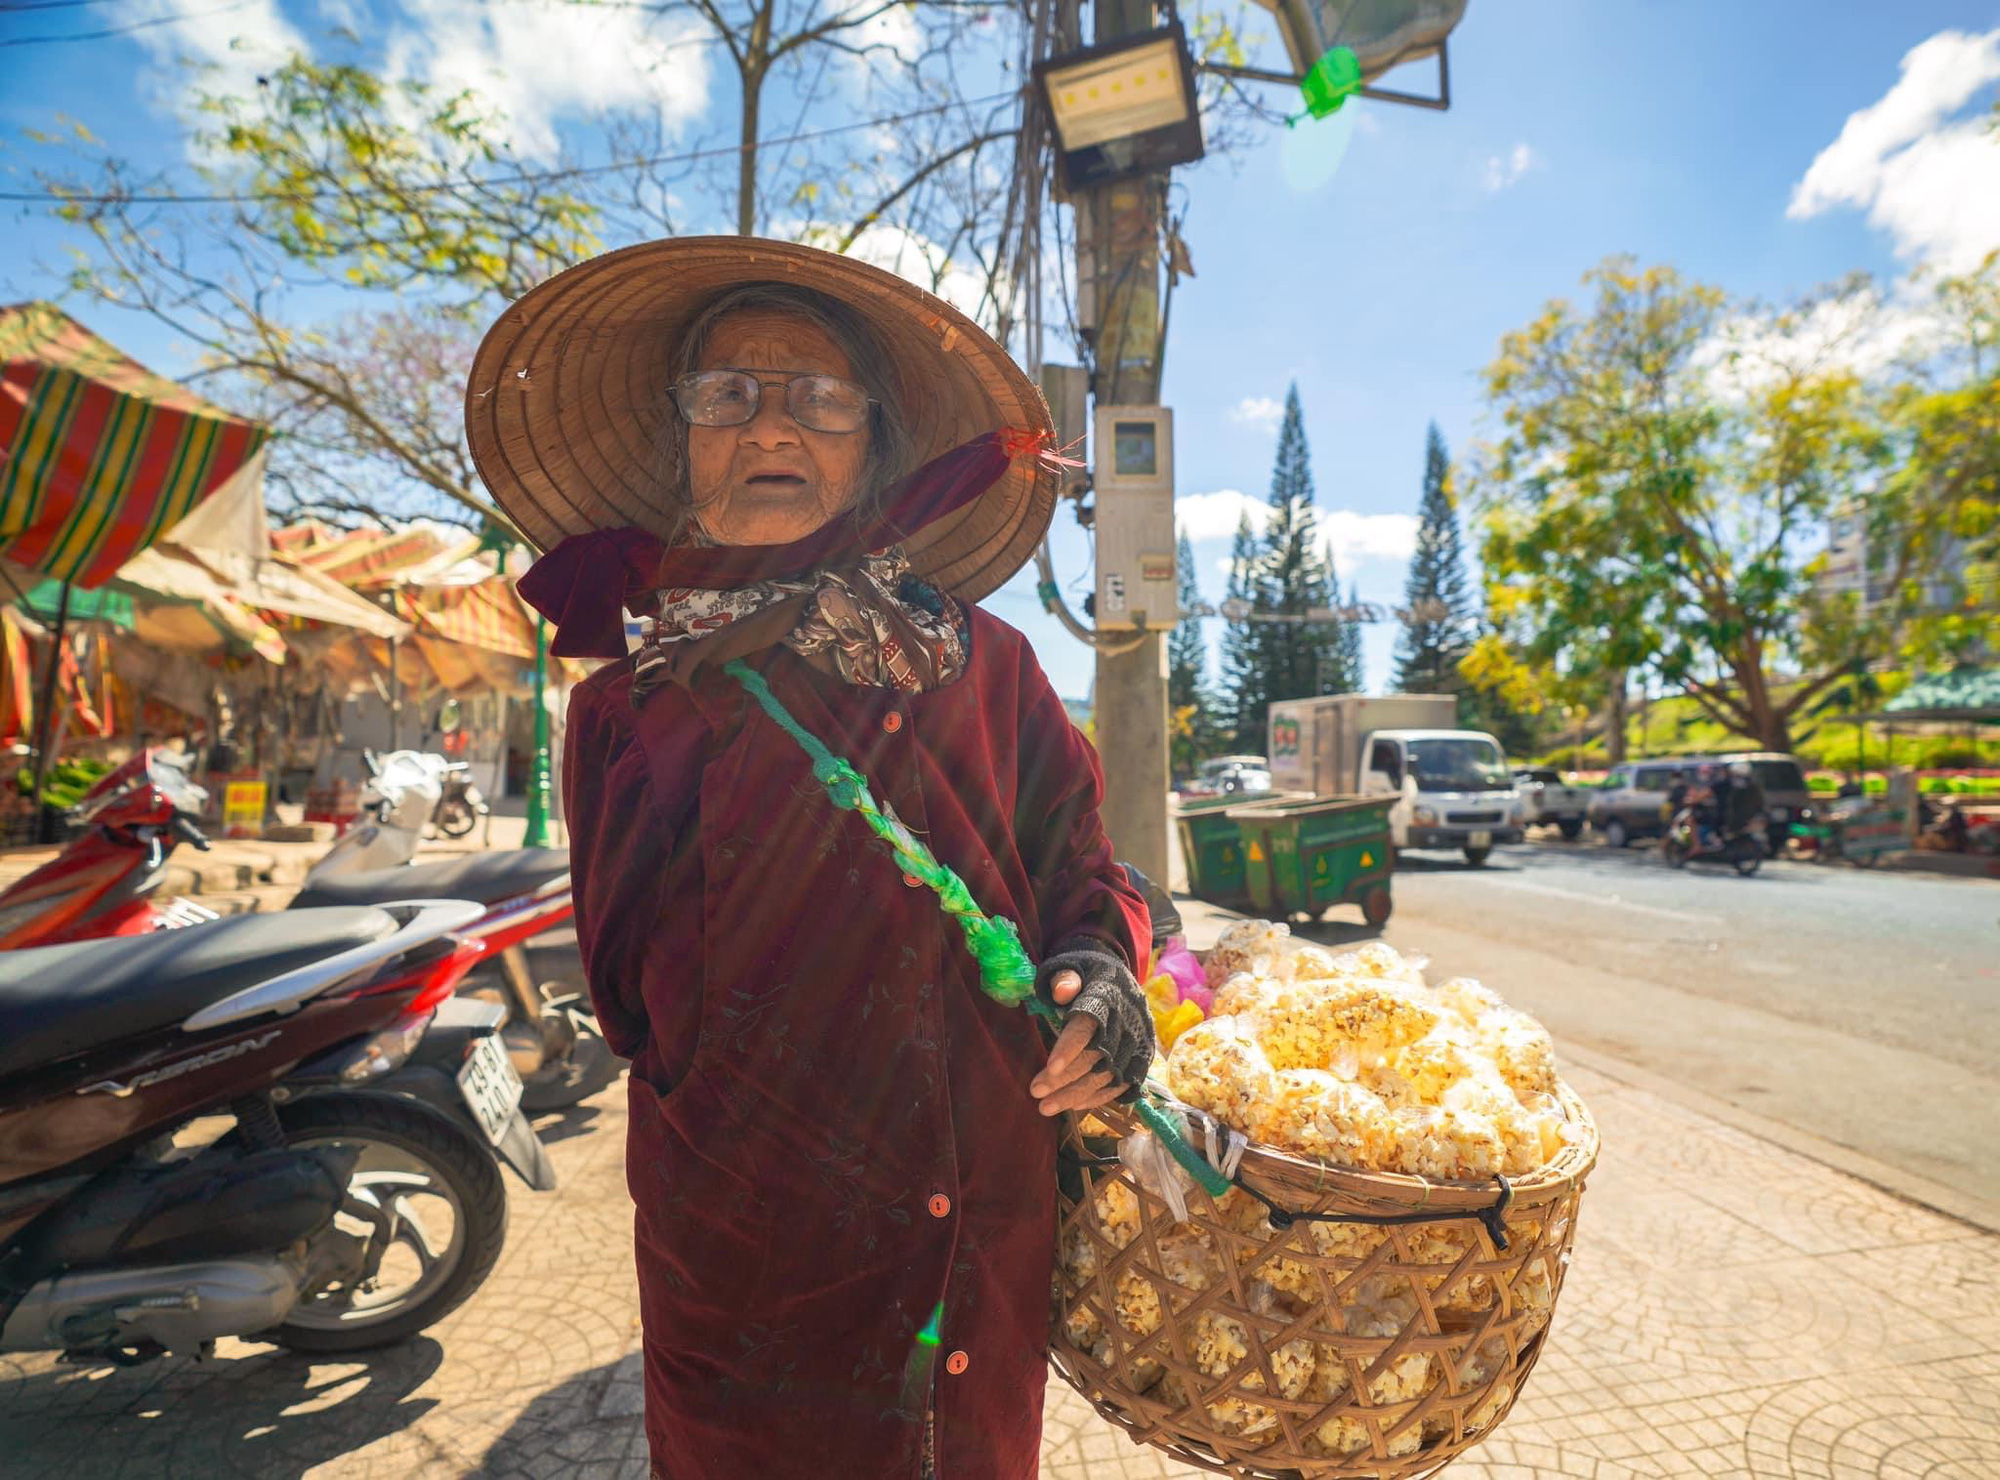 Gặp bà cụ 94 tuổi bán bỏng ngô dạo khắp Đà Lạt: Mỗi bức ảnh là câu chuyện khiến người ta cảm động  - Ảnh 8.